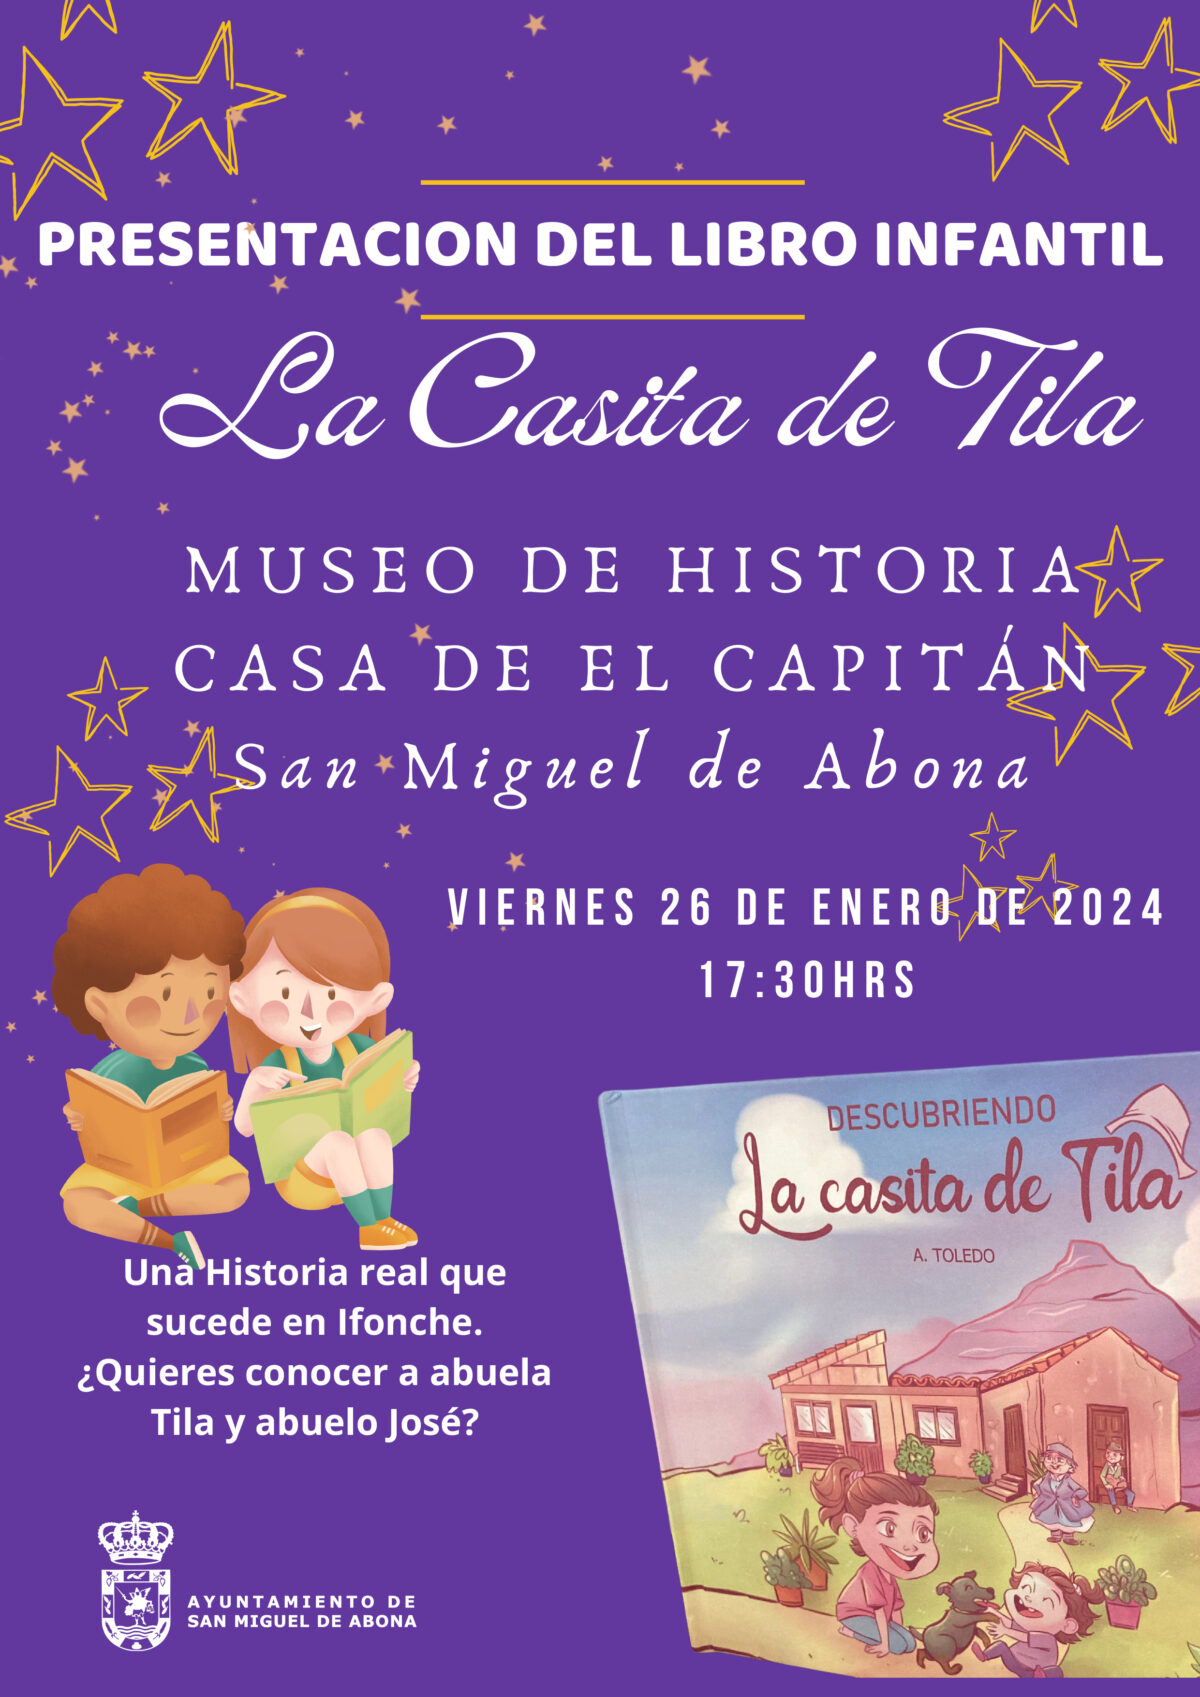 El libro infantil «La Casa de Tila» se presenta en el Museo de Historia Casa de El Capitán